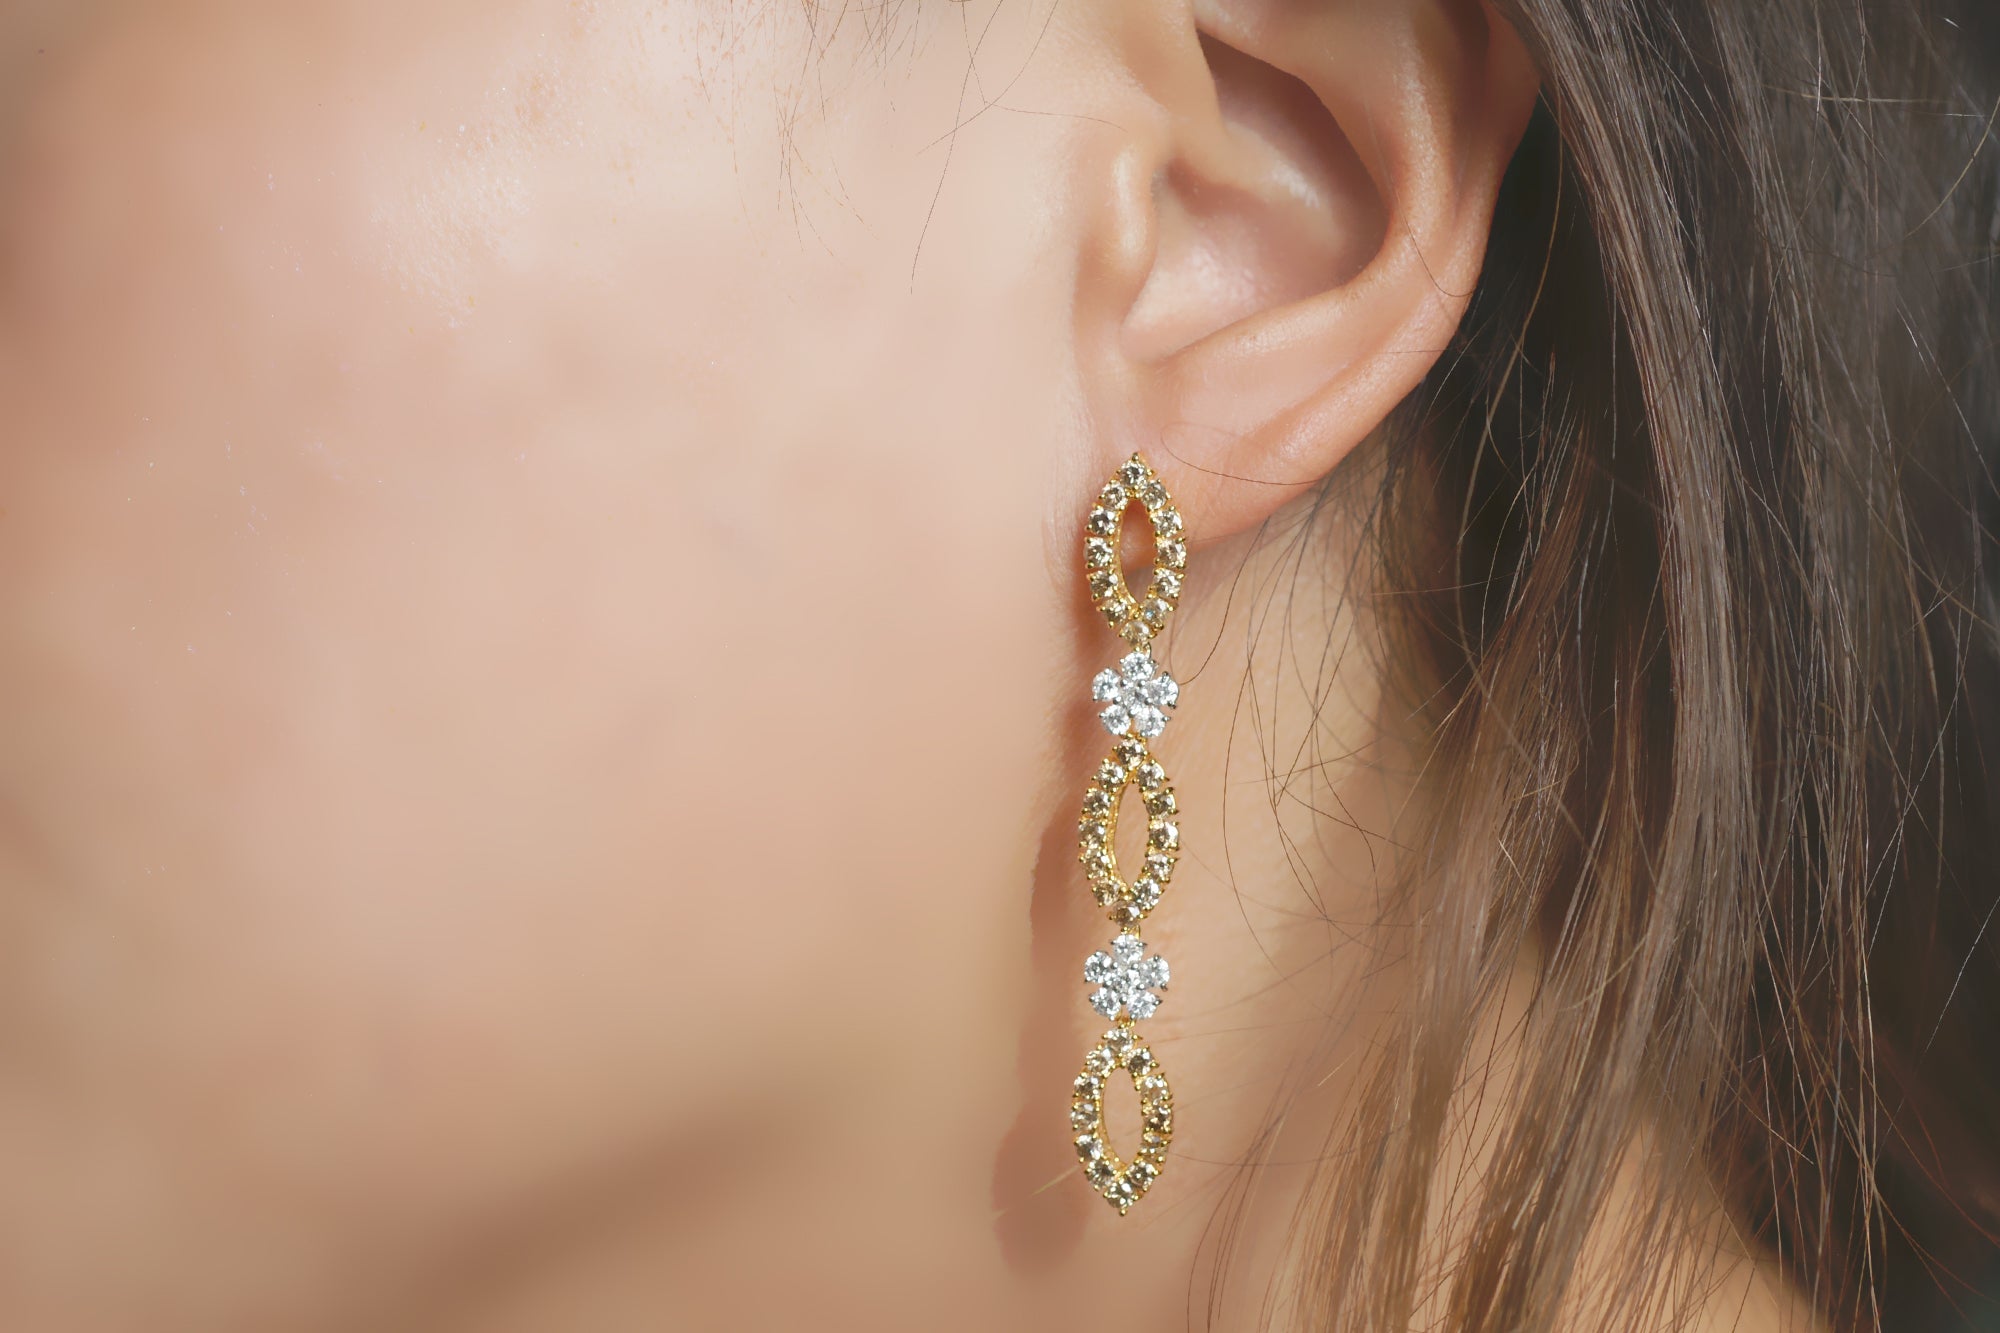 Yellow Diamond Dangle Earrings